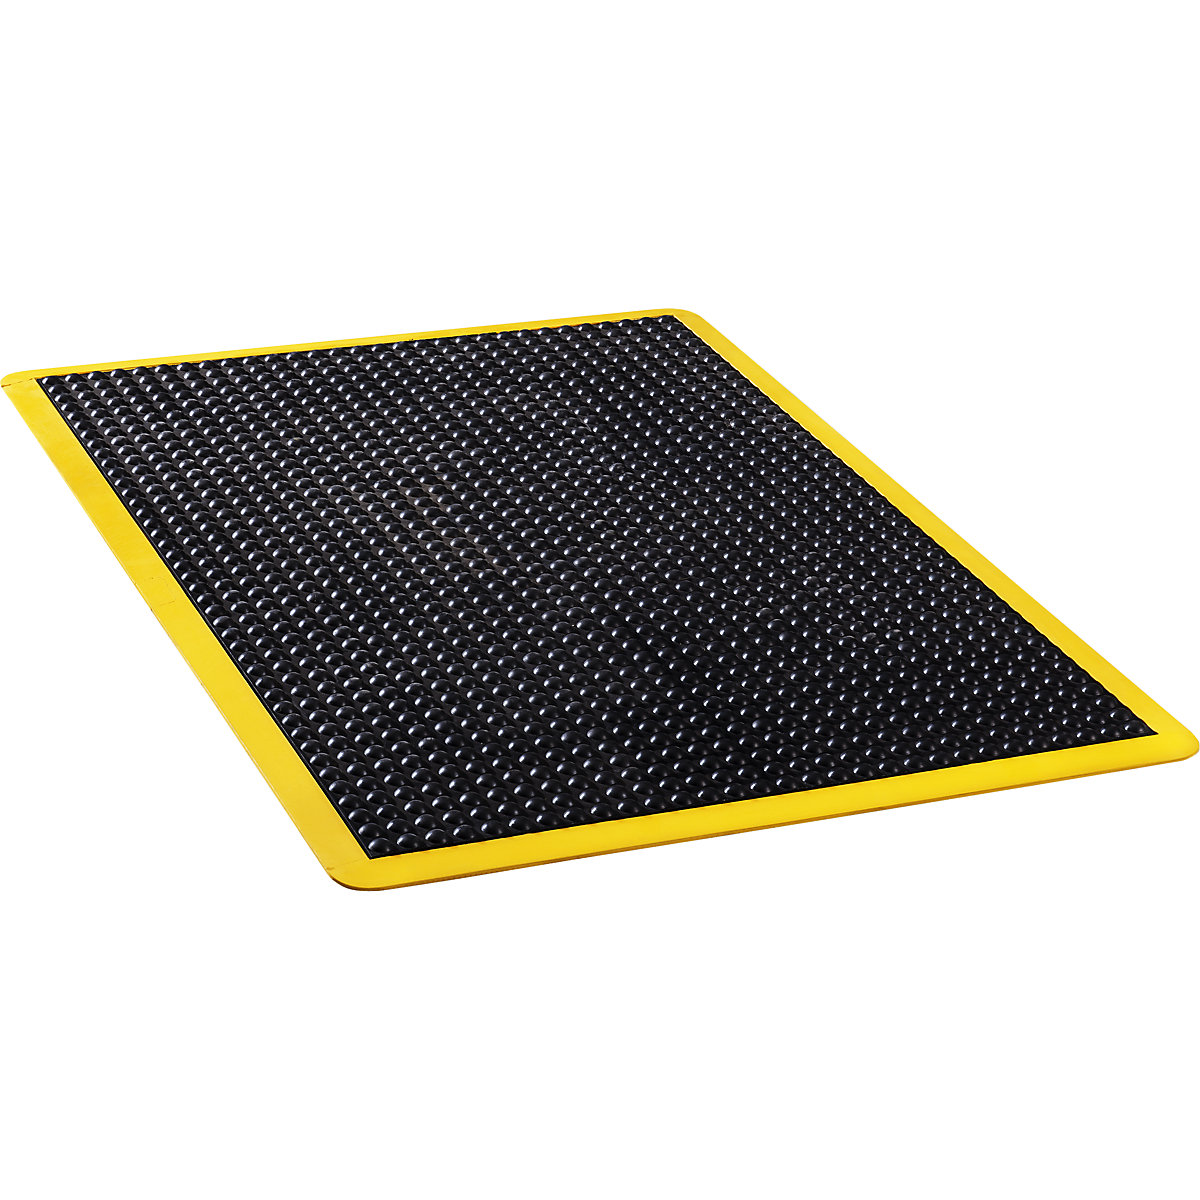 Tapis anti-fatigue Bubblemat safety – COBA, L x l x h 1200 x 900 x 14 mm, noir-jaune, tapis individuel-3